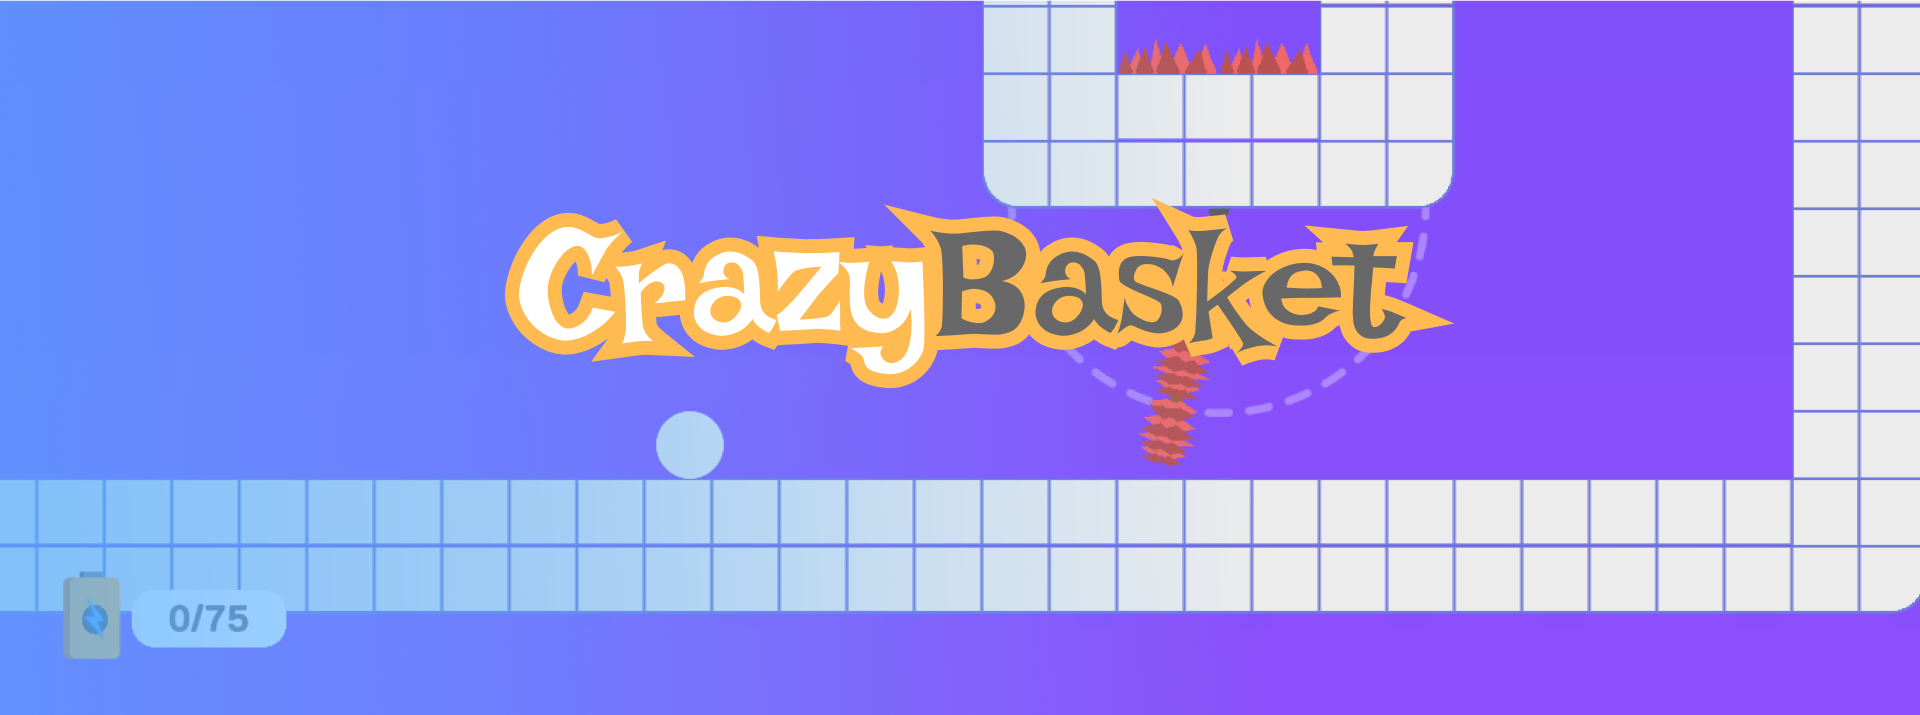 CrazyBasket